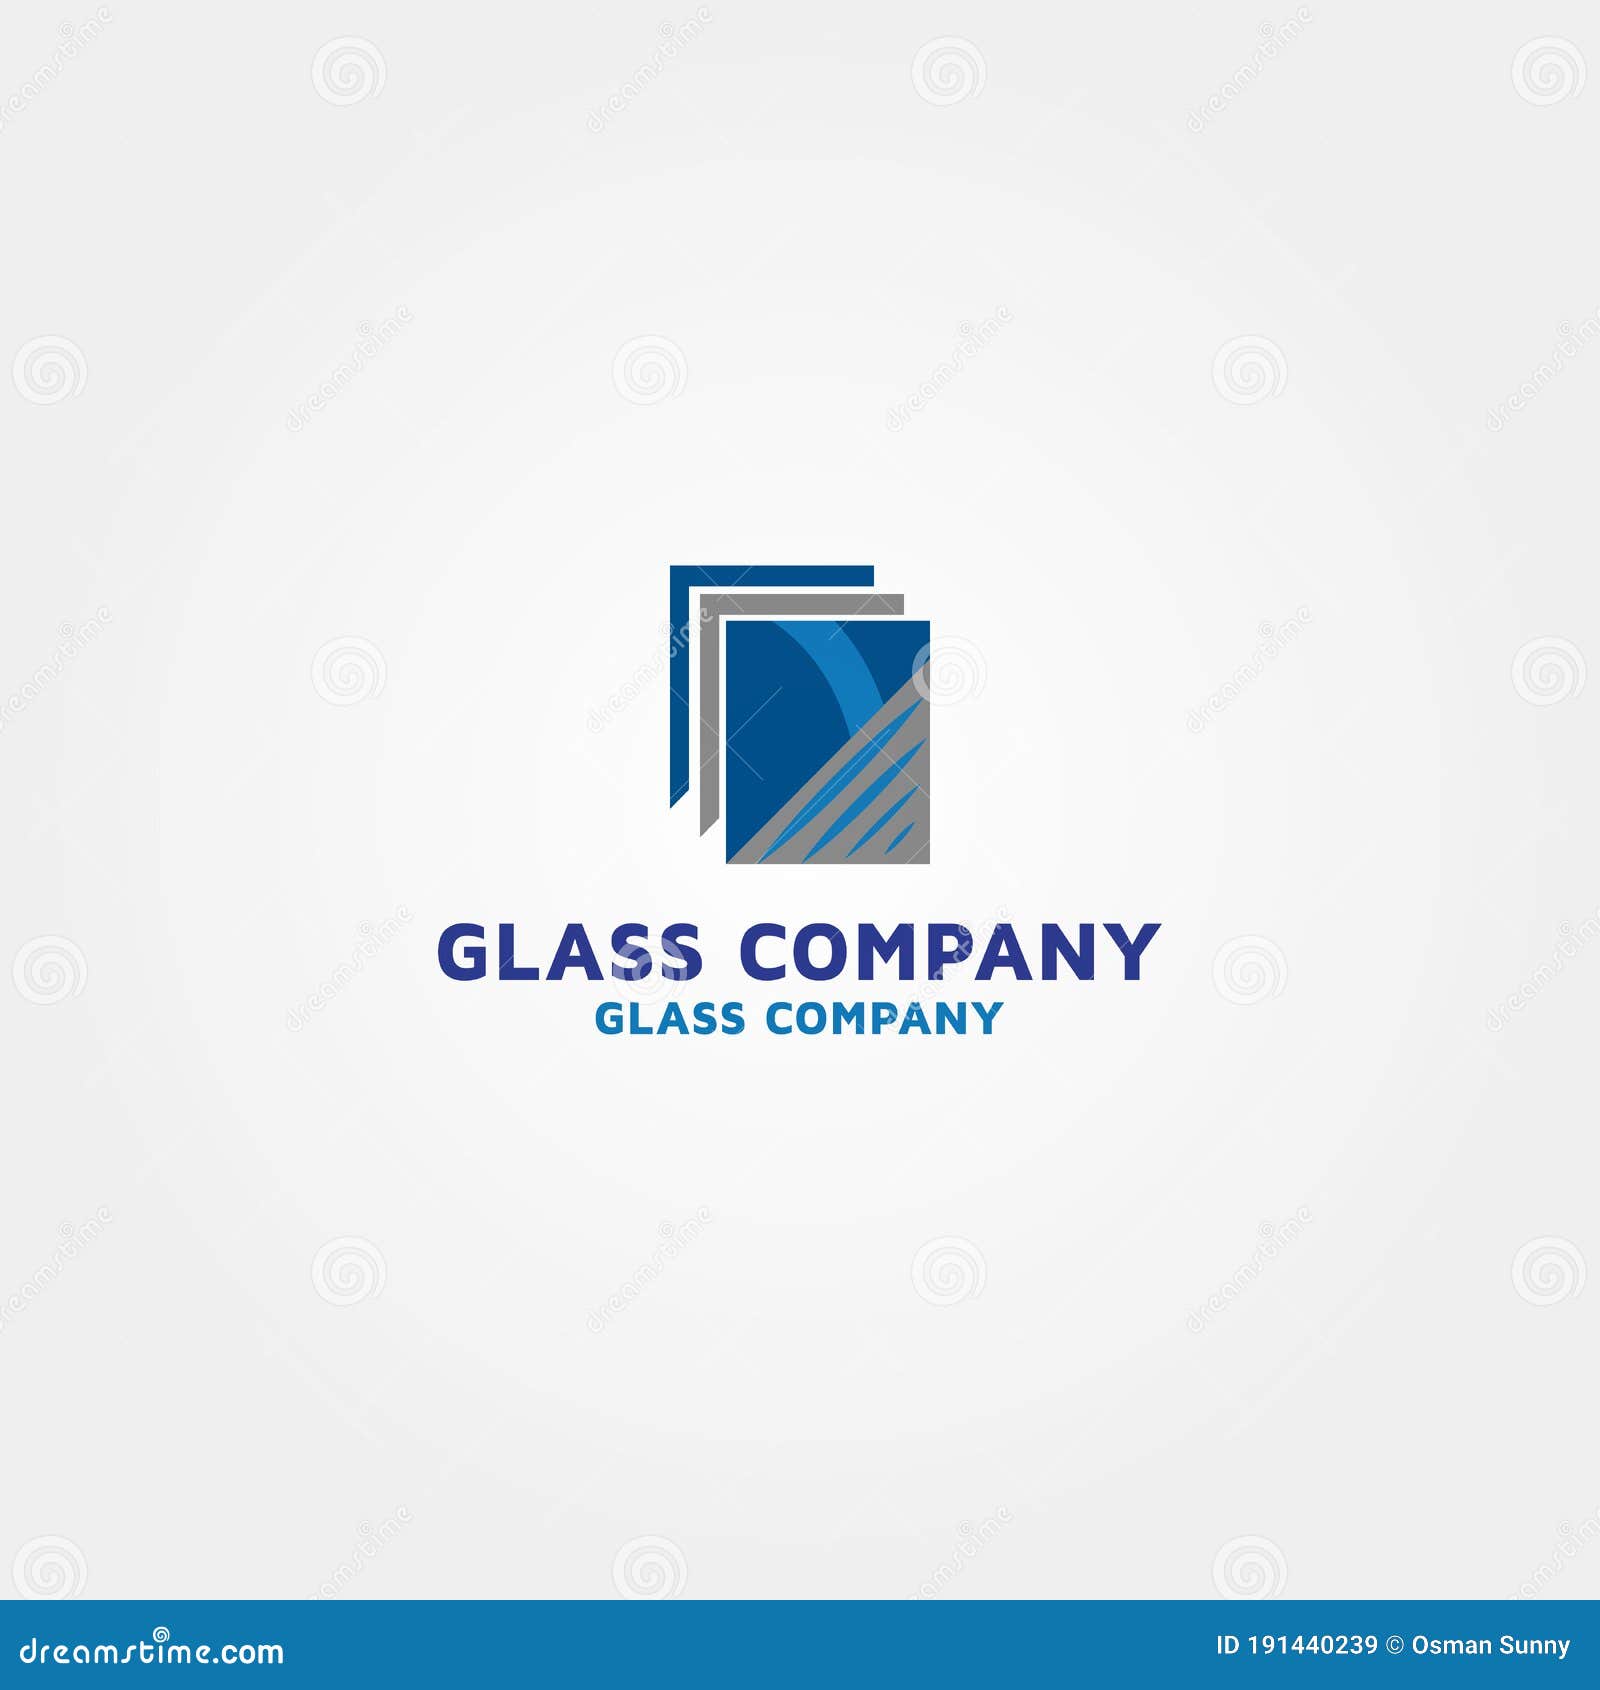 Share 106+ glass logo design